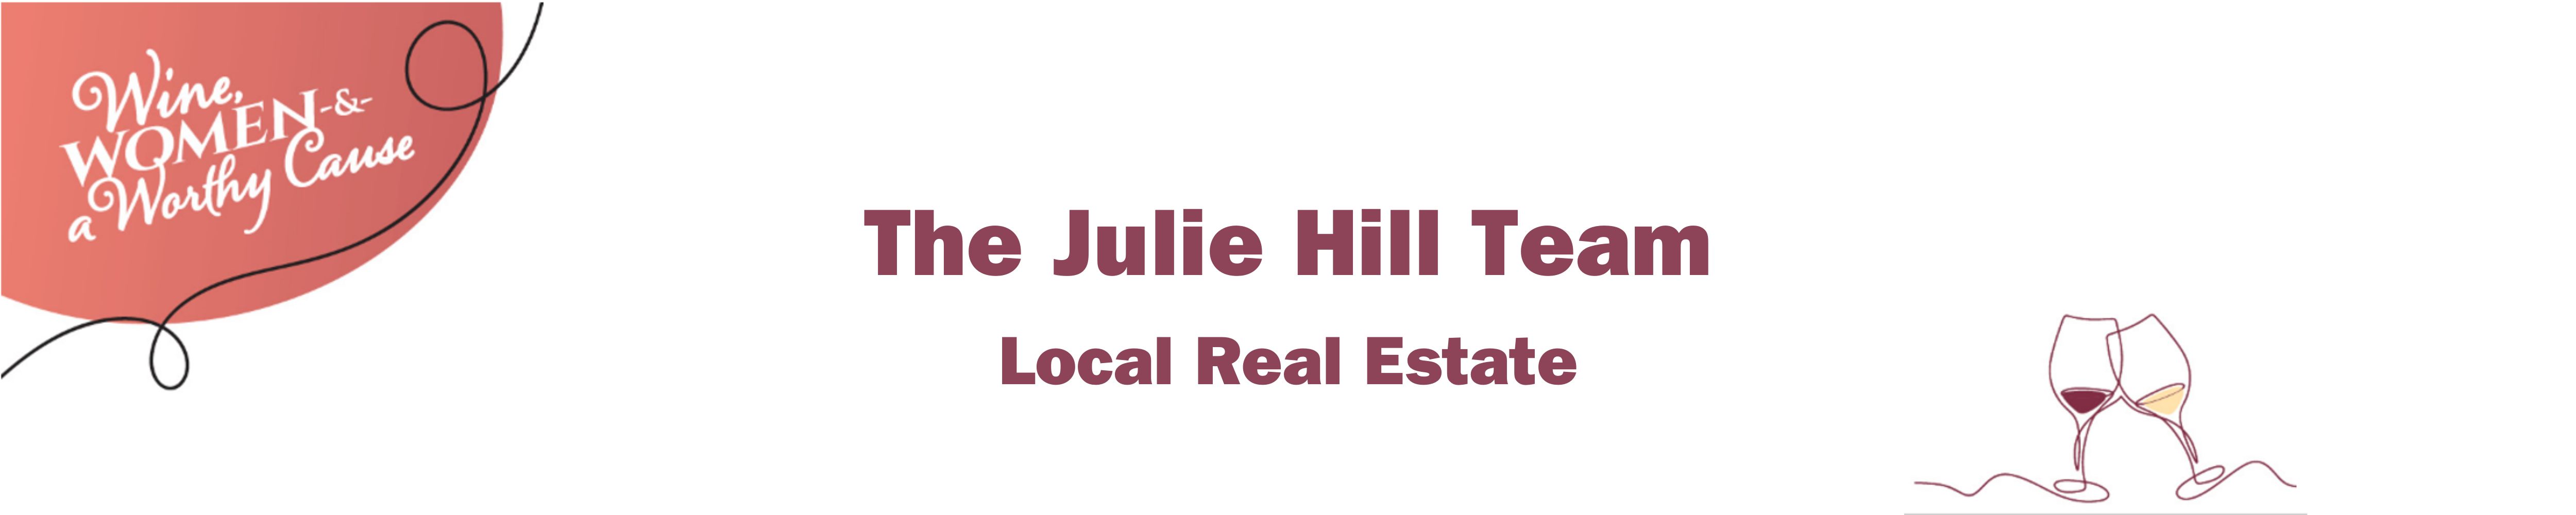 The Julie Hill Team